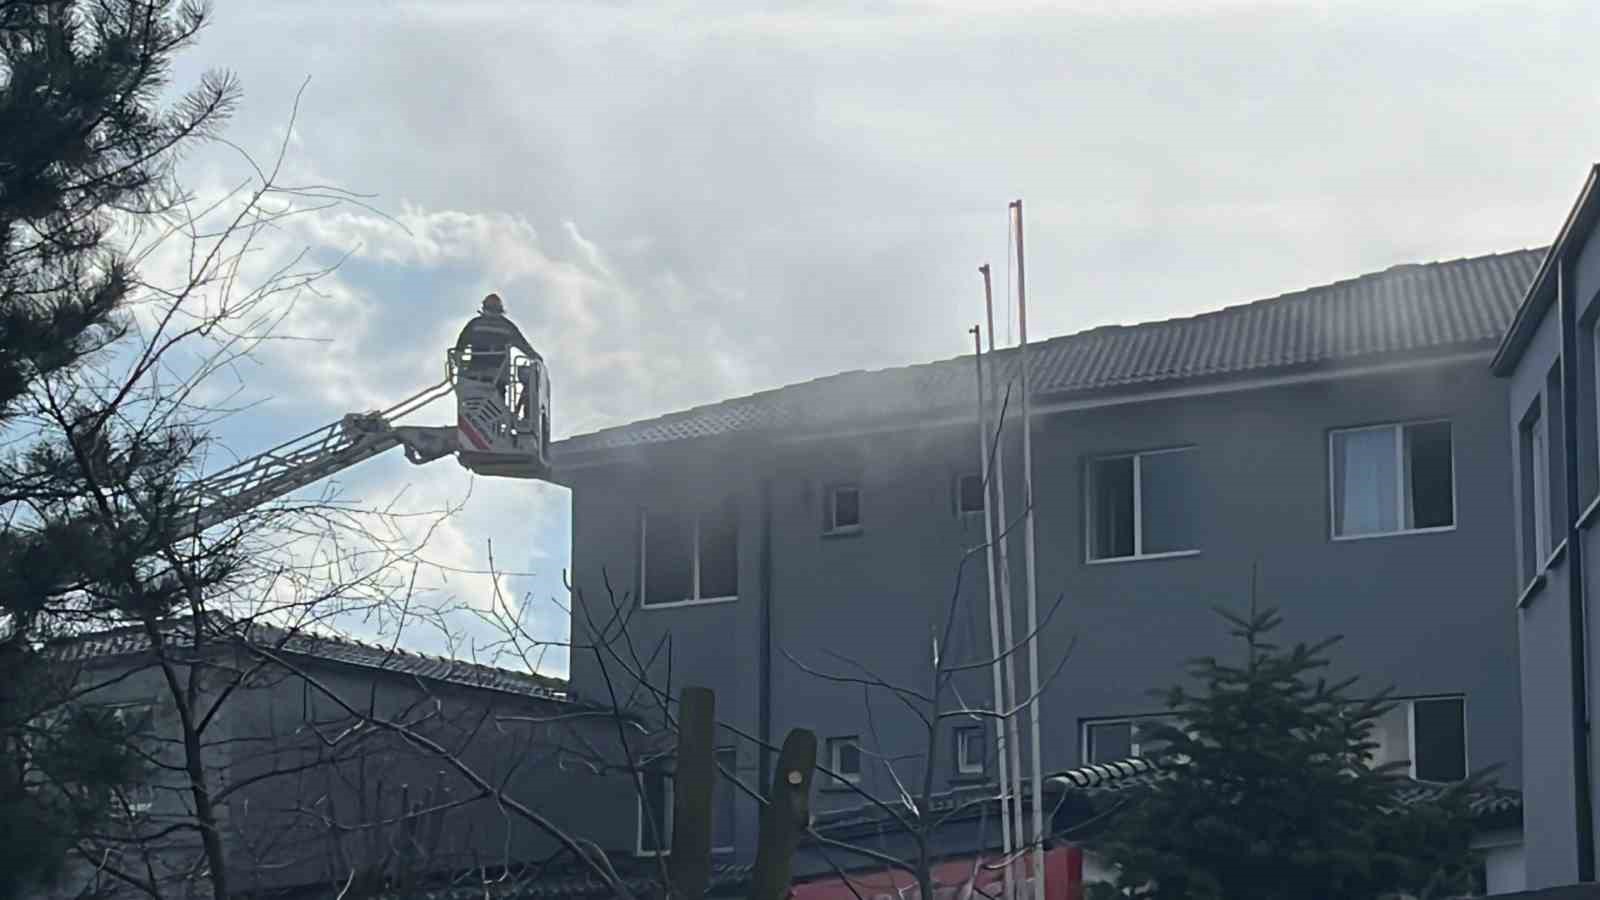 Boluspor’un altyapı tesislerinde yangın çıktı
